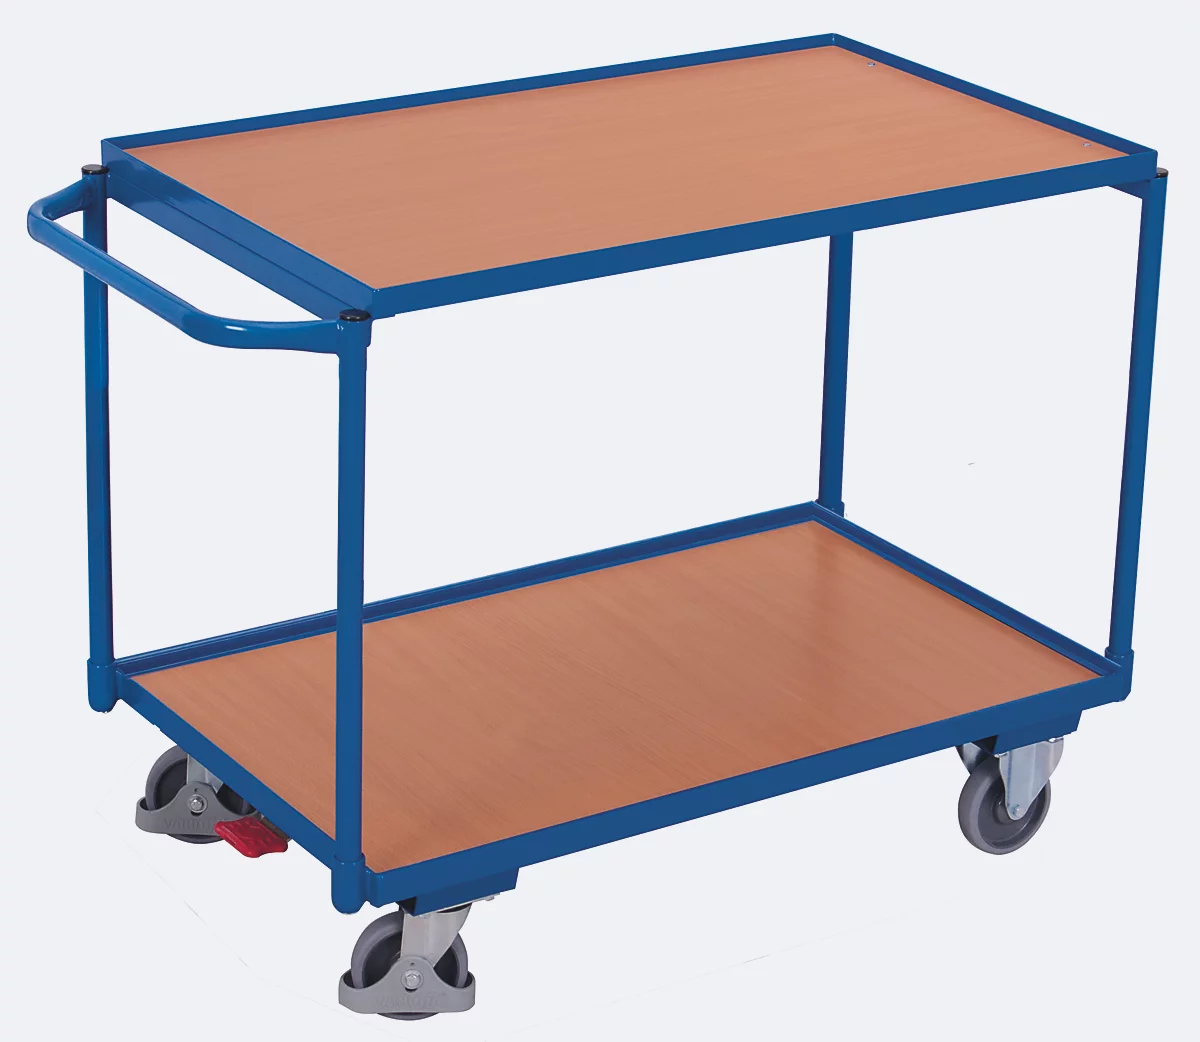 Carro de mesa ligera, tablero de acero/MDF, decoración azul genciana/haya, 2 estantes, L 985 x A 605 mm, ruedas TPE con EasySTOP, hasta 250 kg